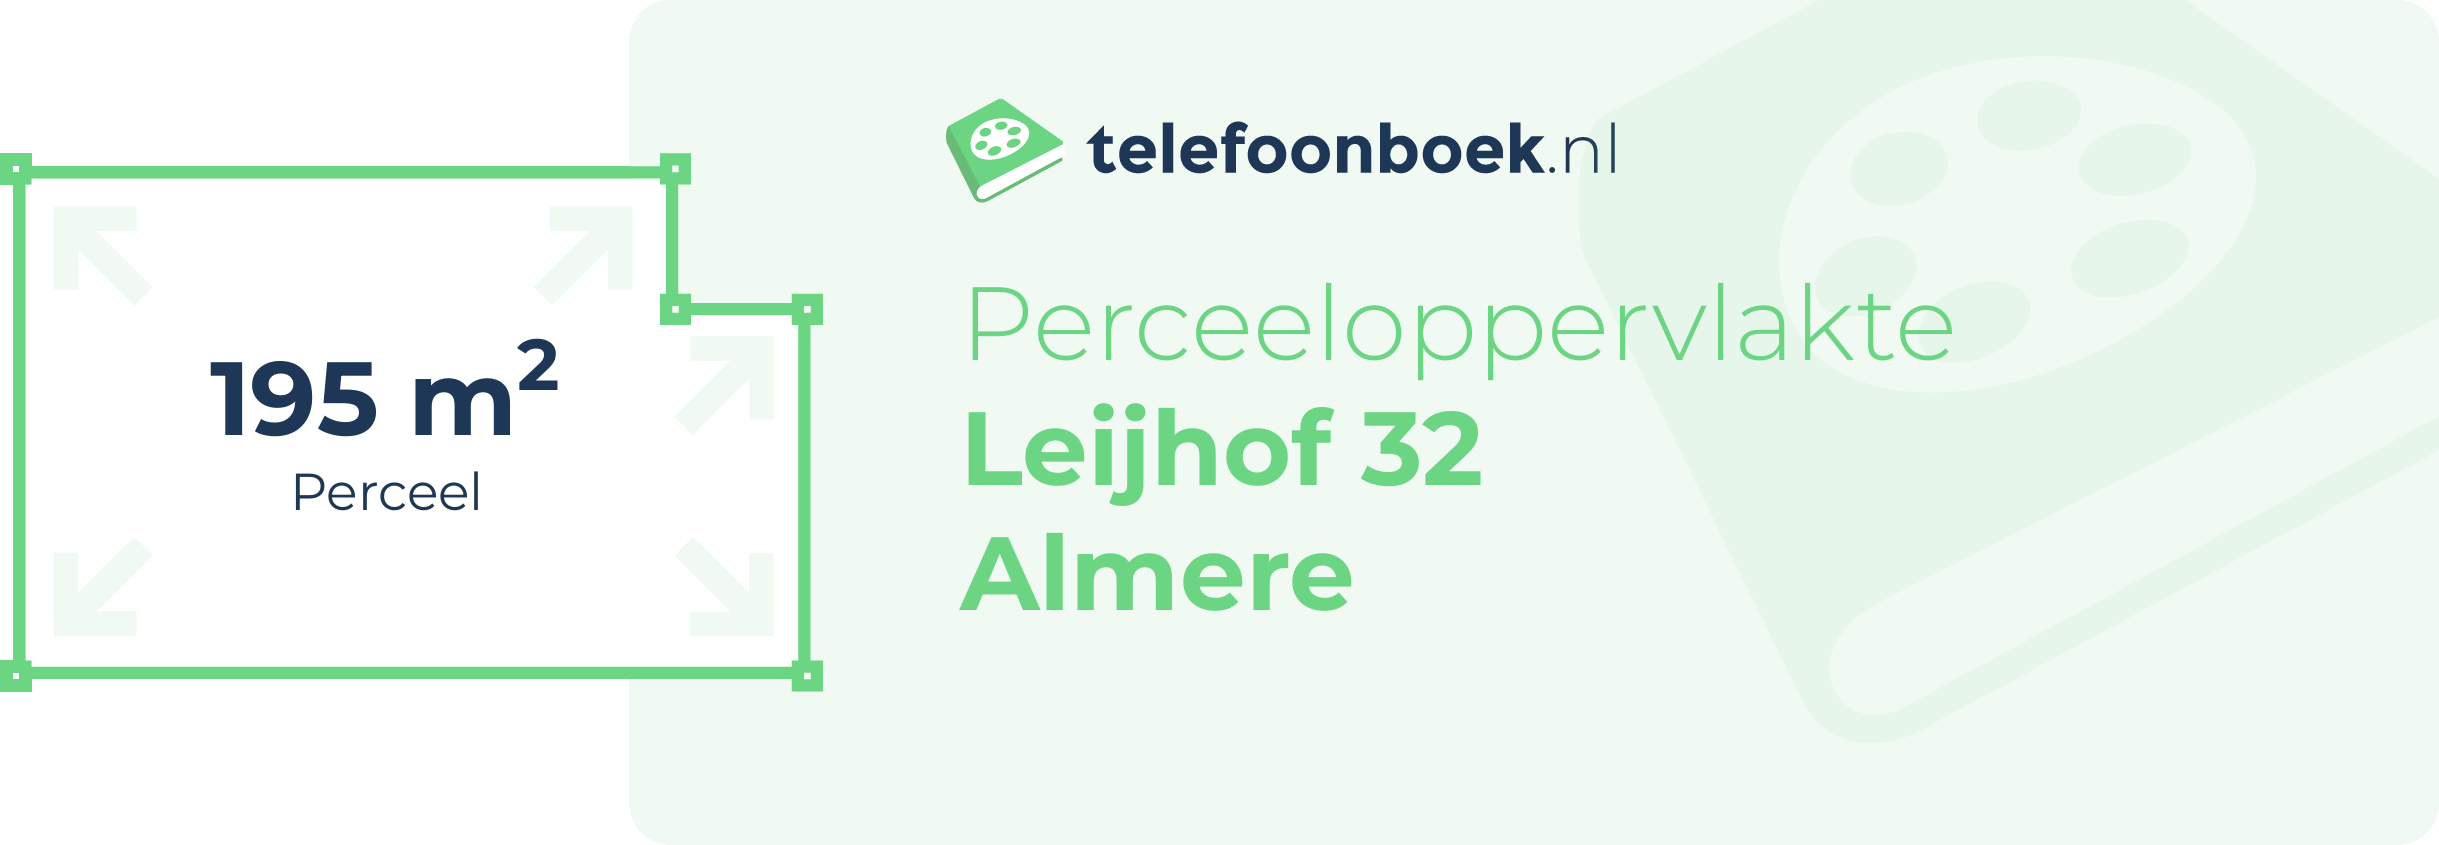 Perceeloppervlakte Leijhof 32 Almere